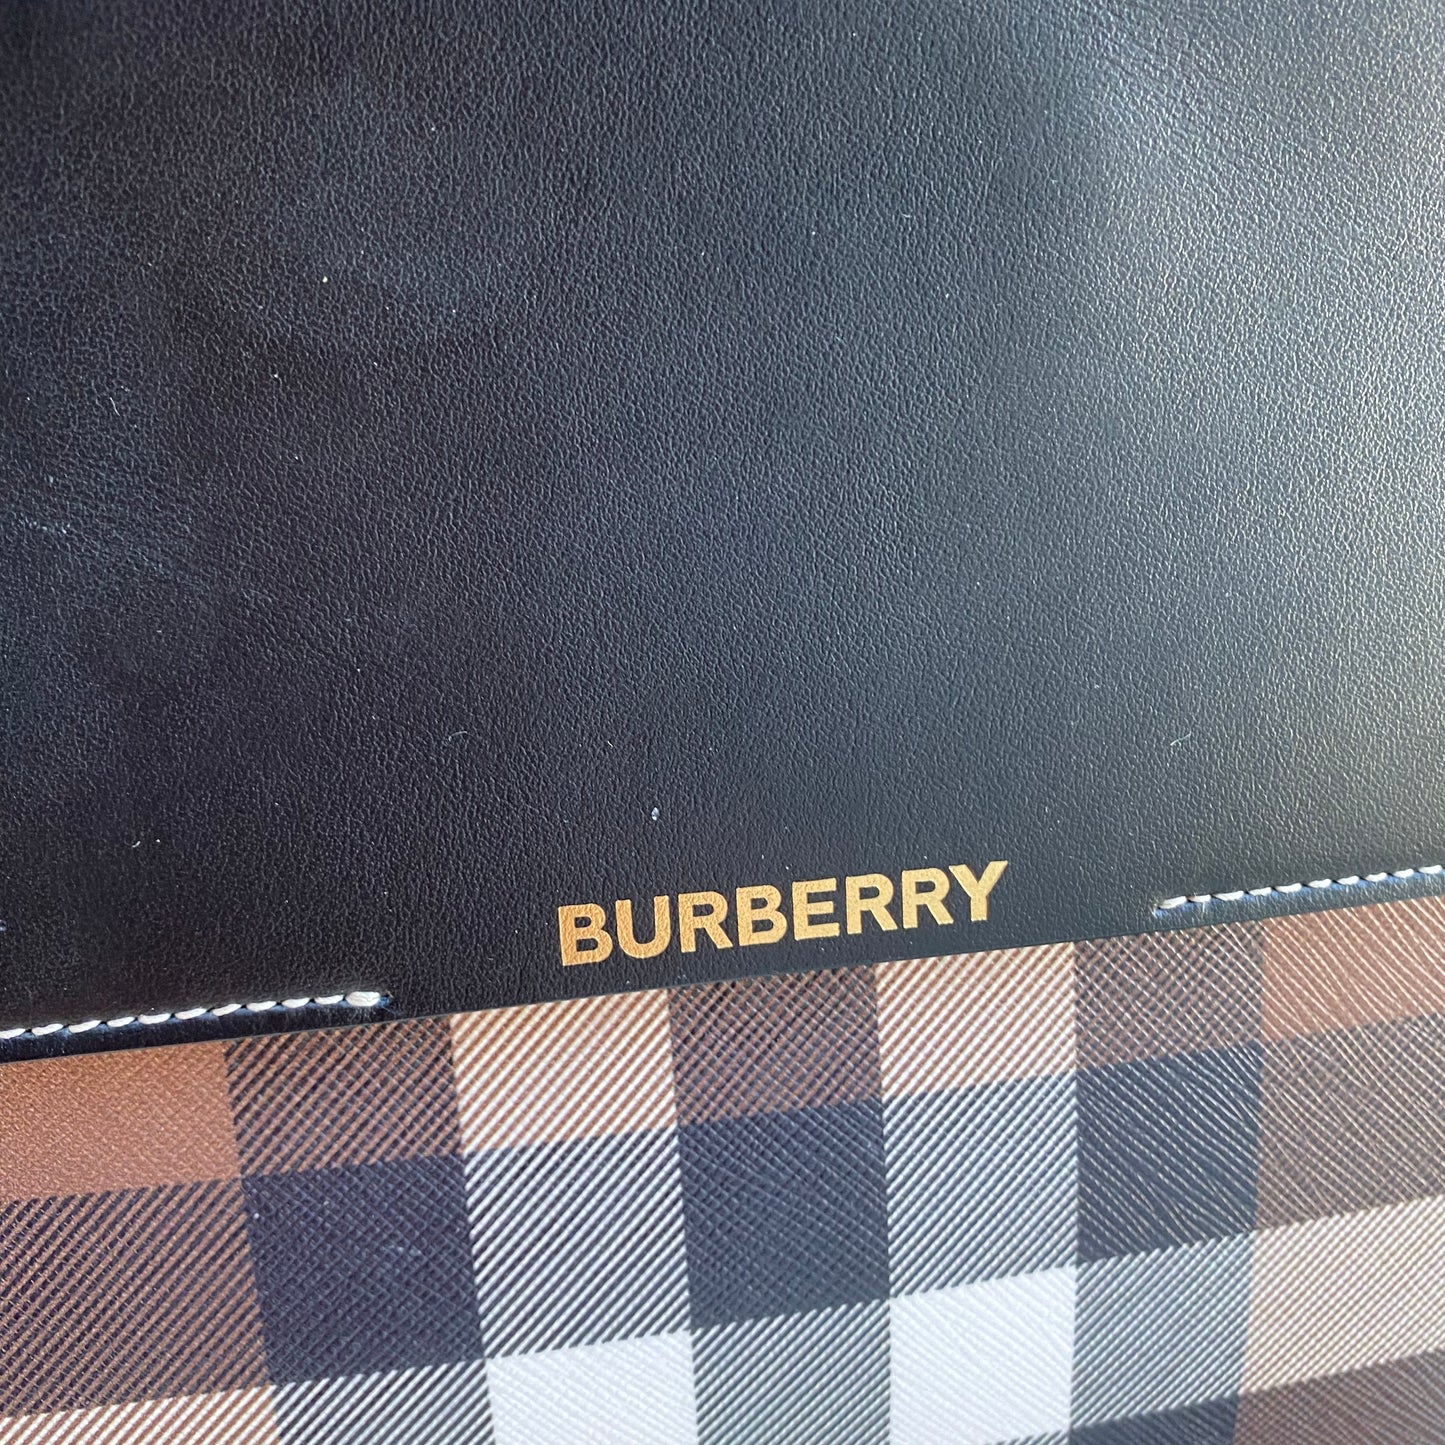 Burberry Catherine Smoked Check Tote Bag